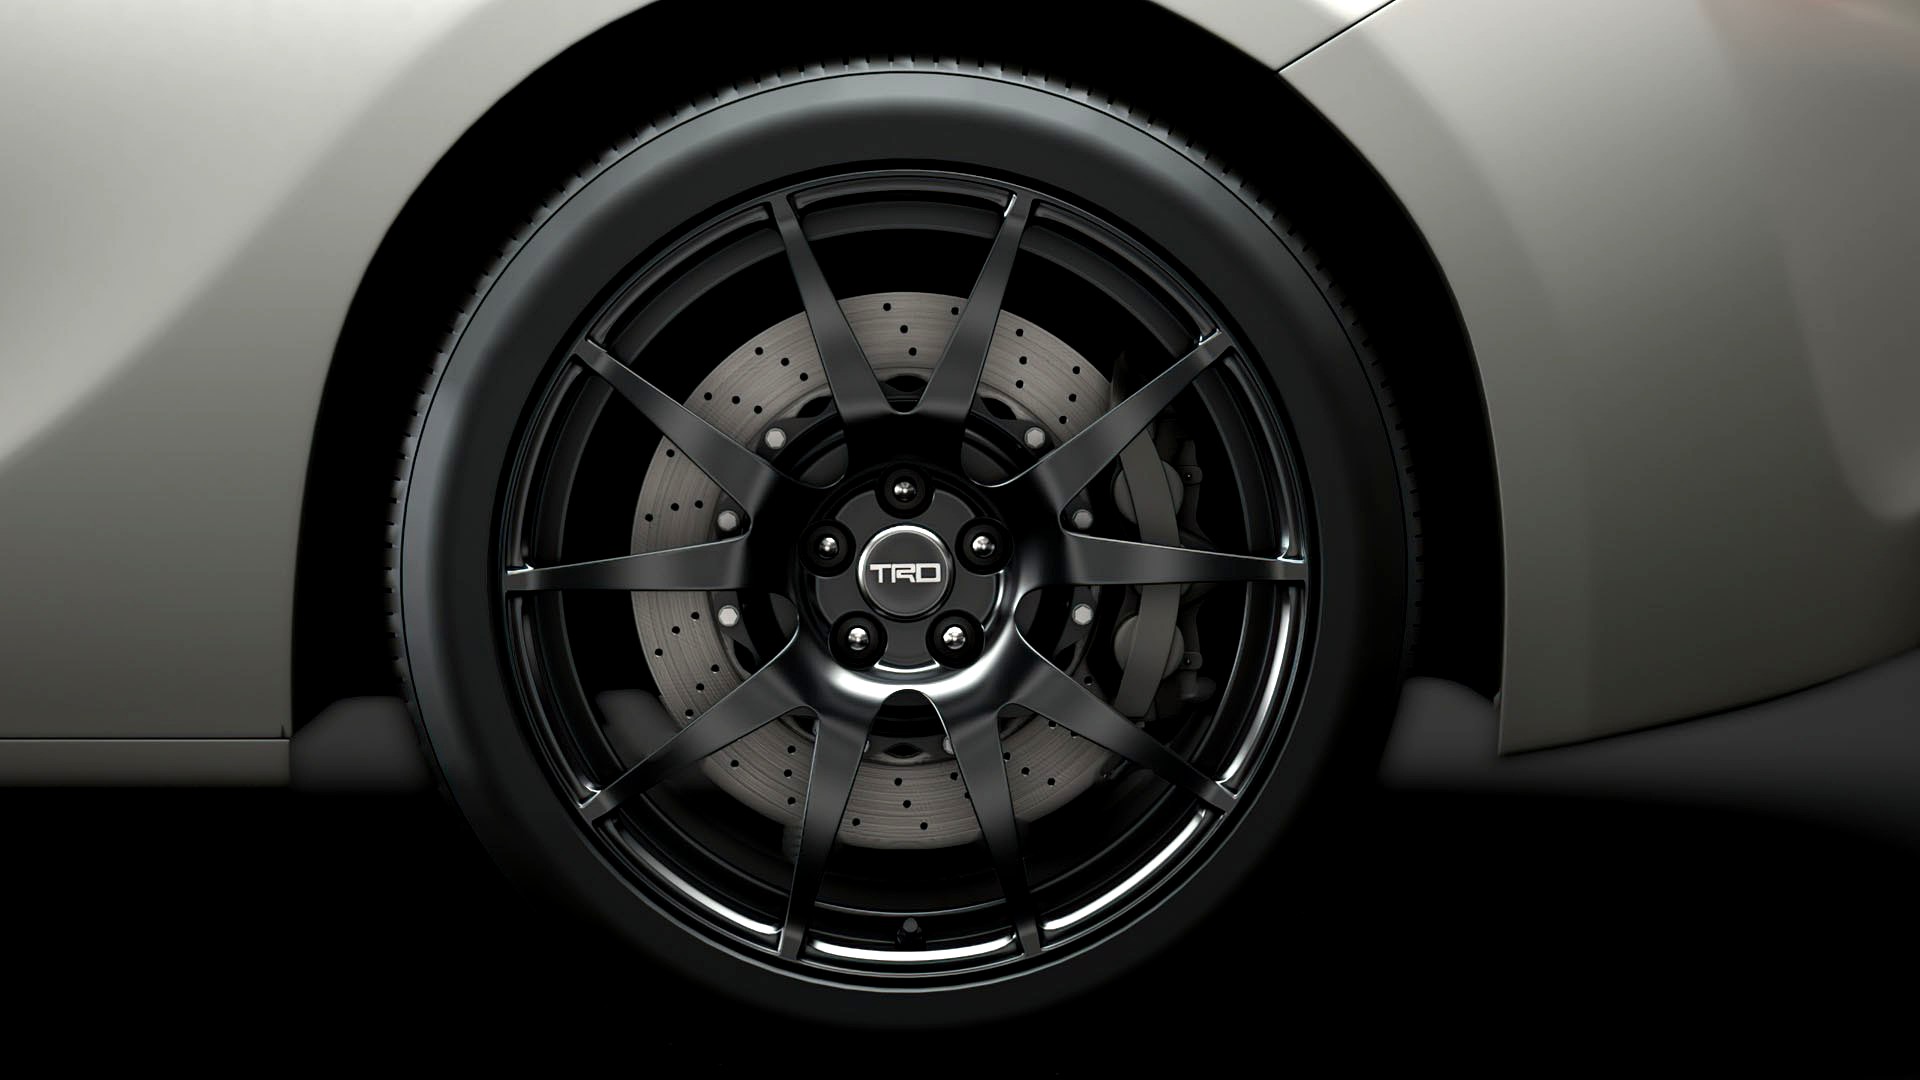 Scion TRD 2020 wheel